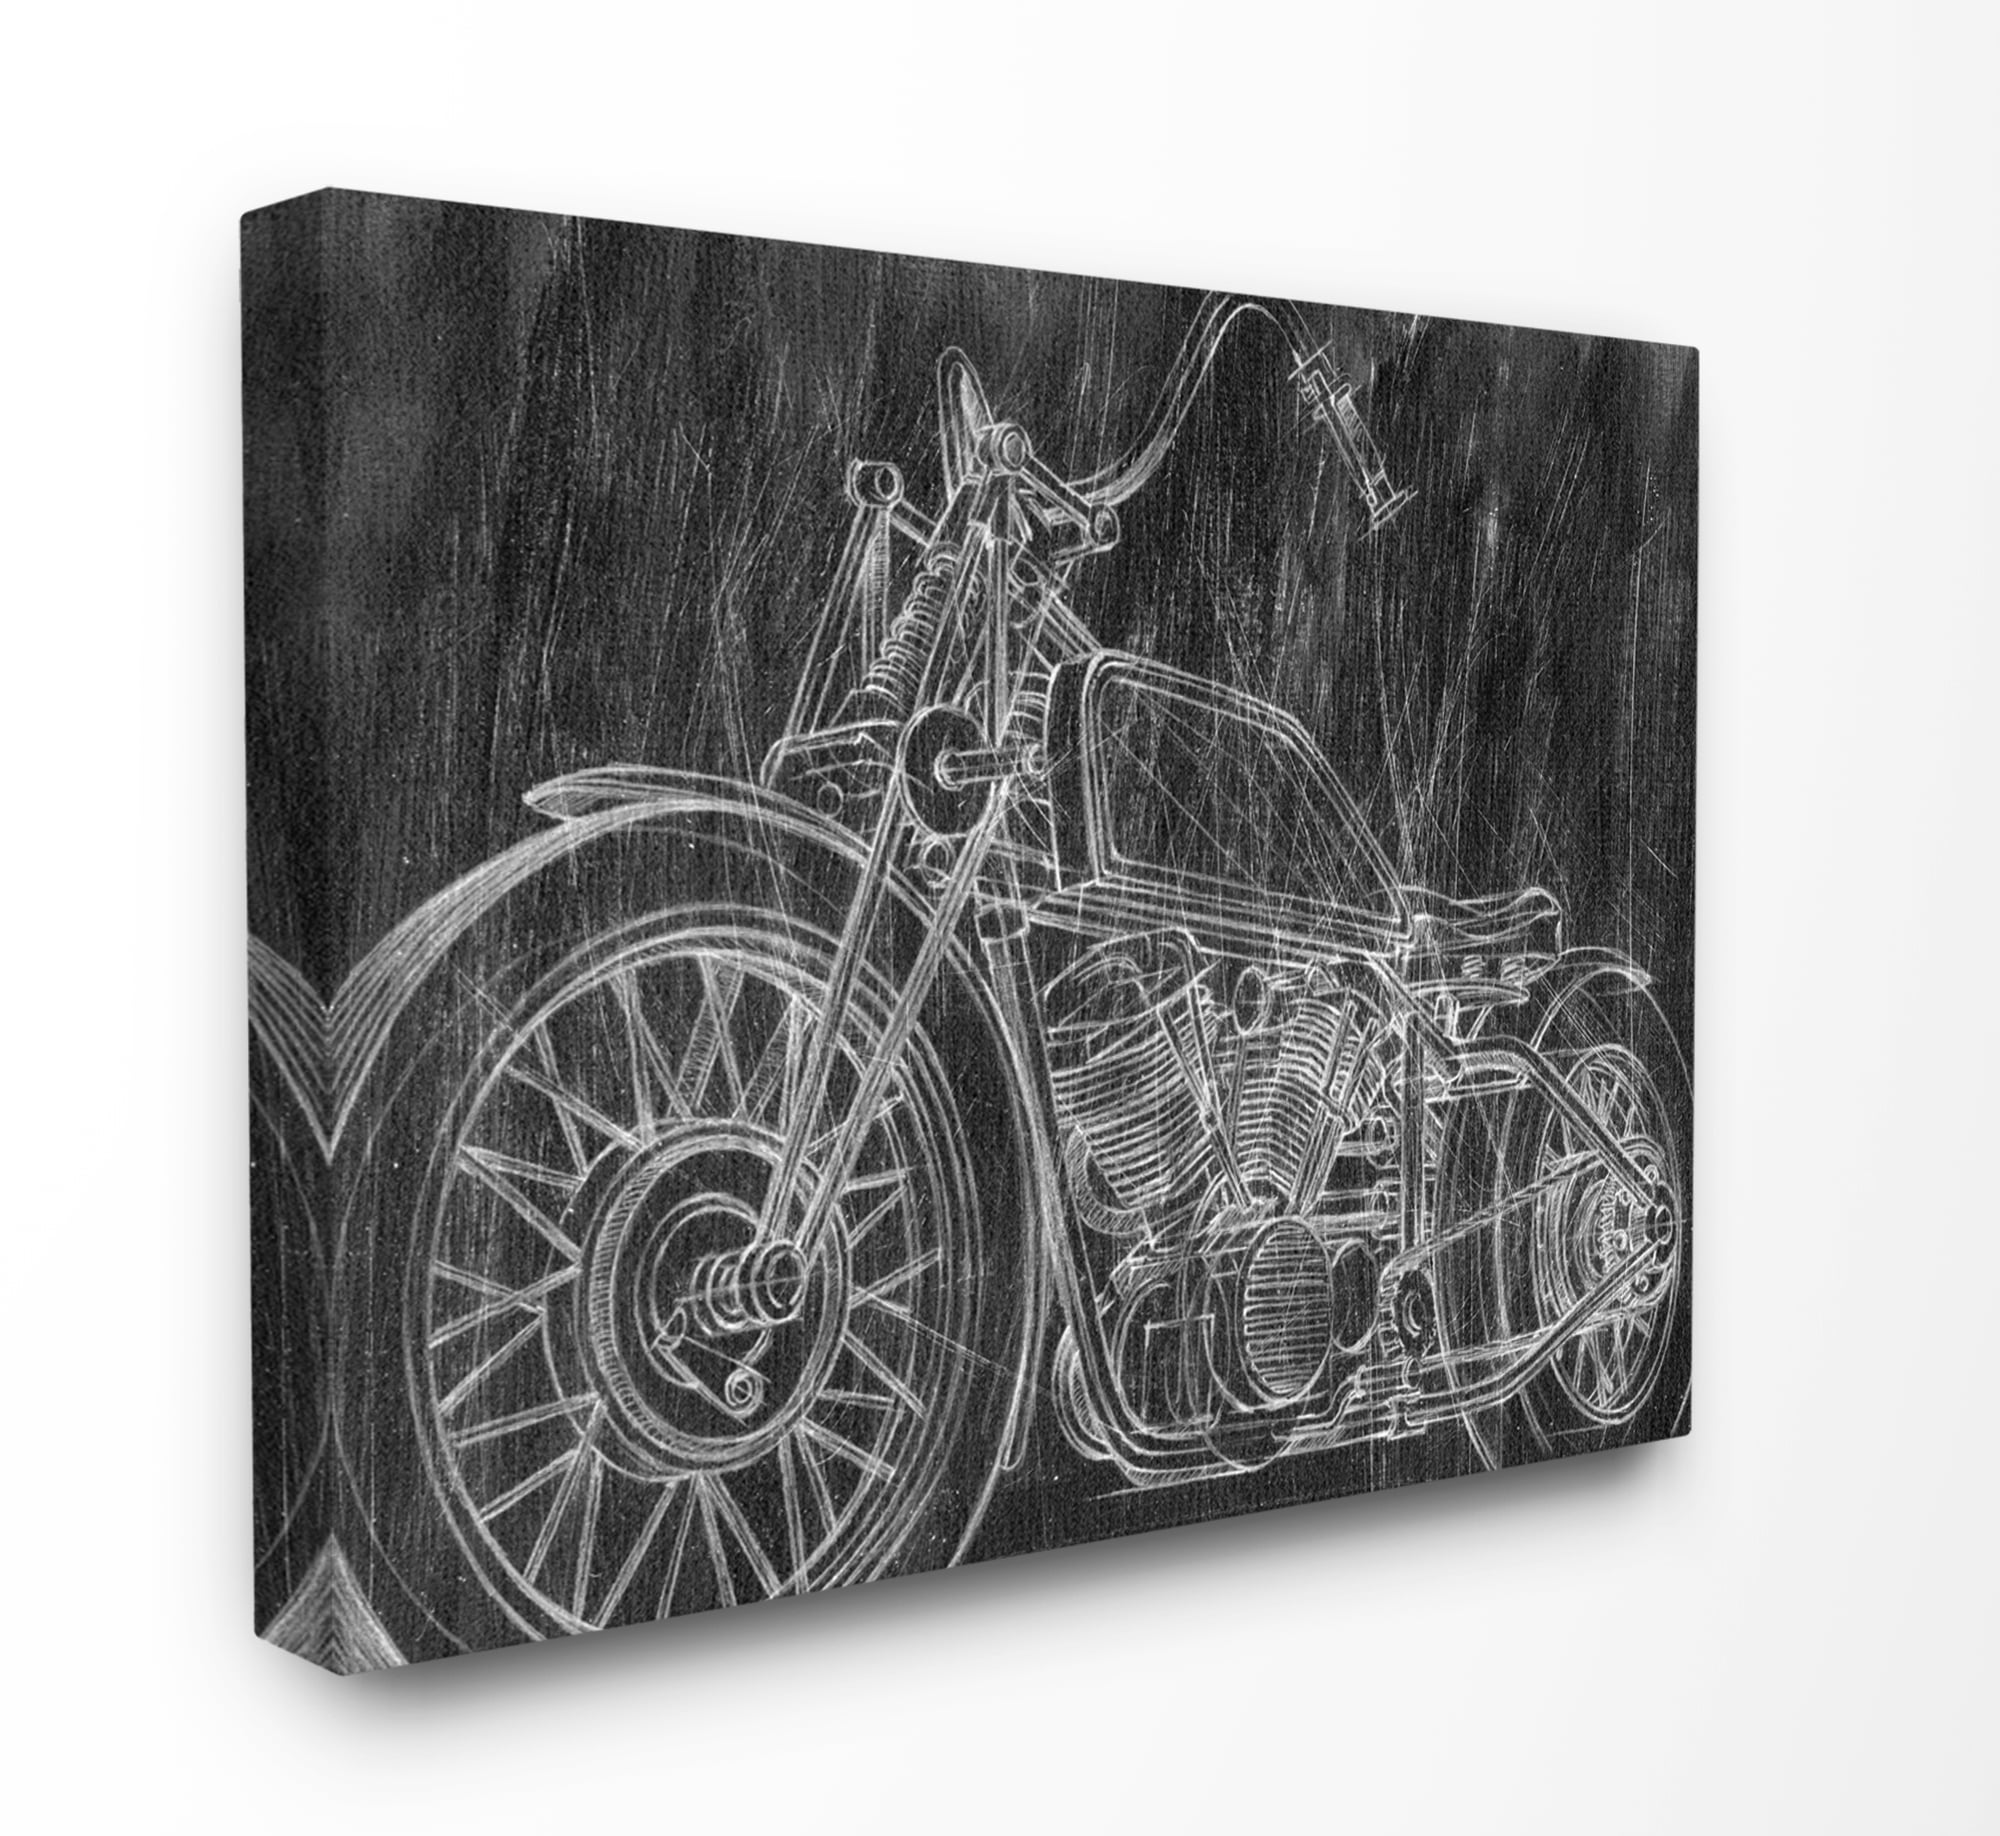 A stunning home decor design CHOPPER Motorbike Wall Art Sticker Decal 